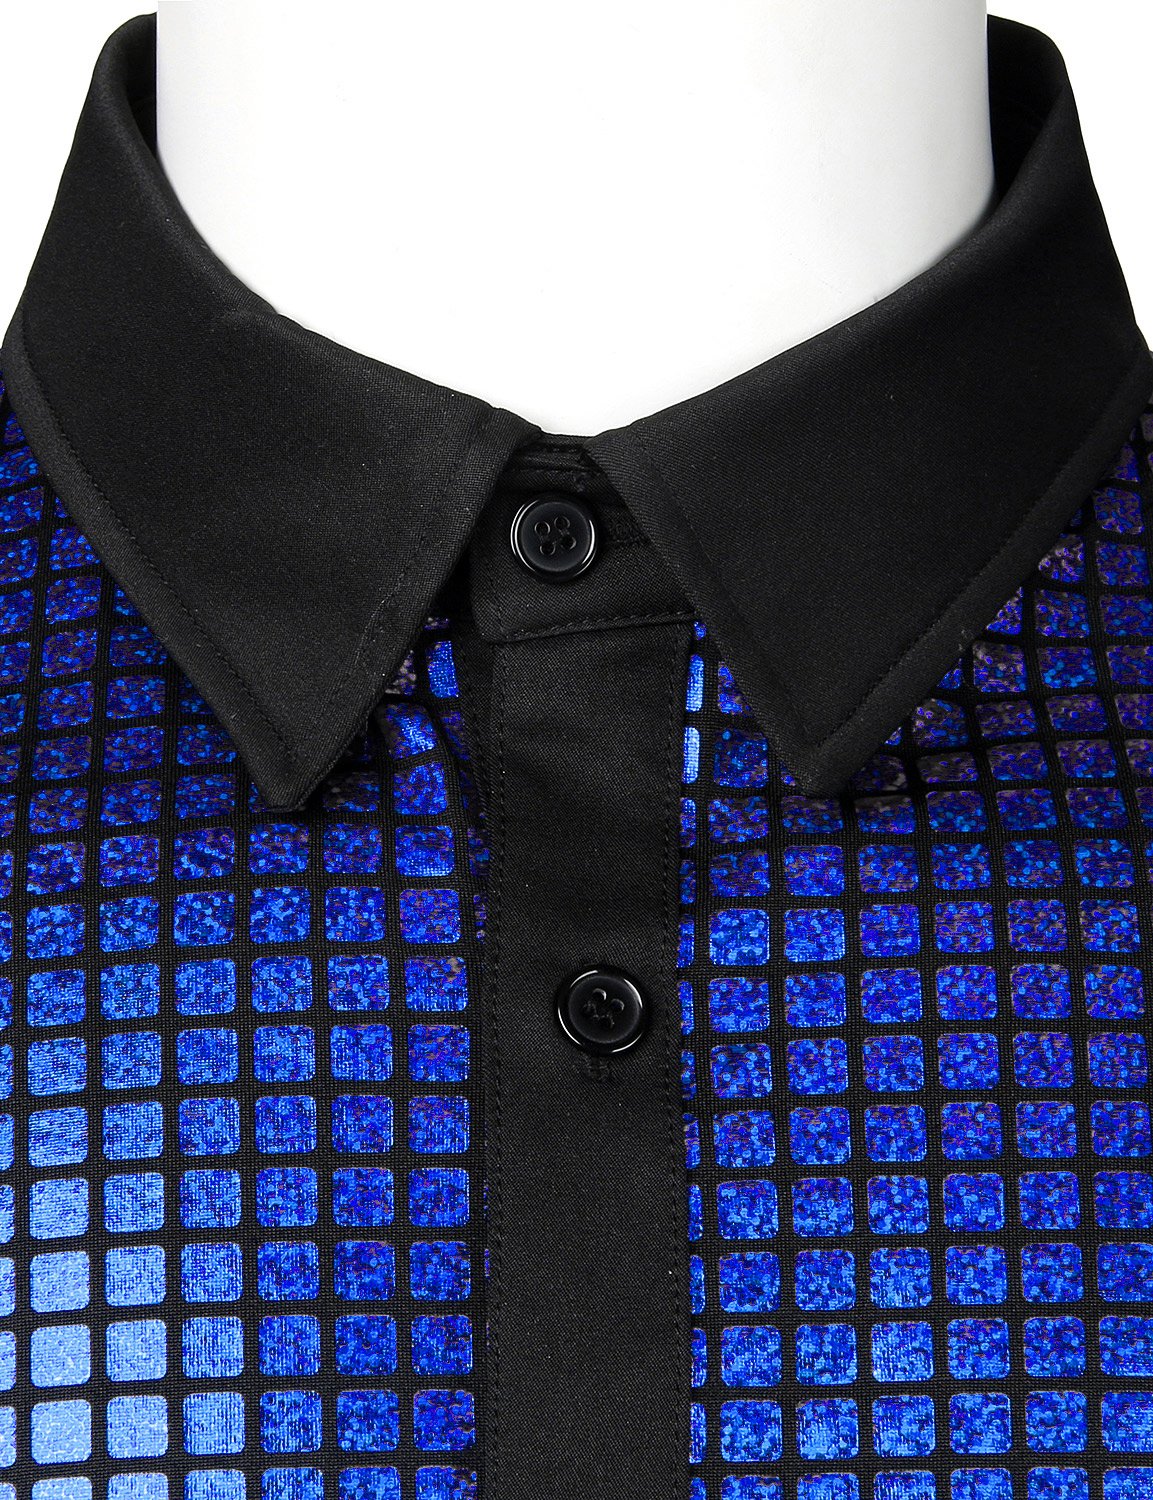 JOGAL Men's Dress Shirt Sequins Button Down Shirts 70s Disco Party Costume